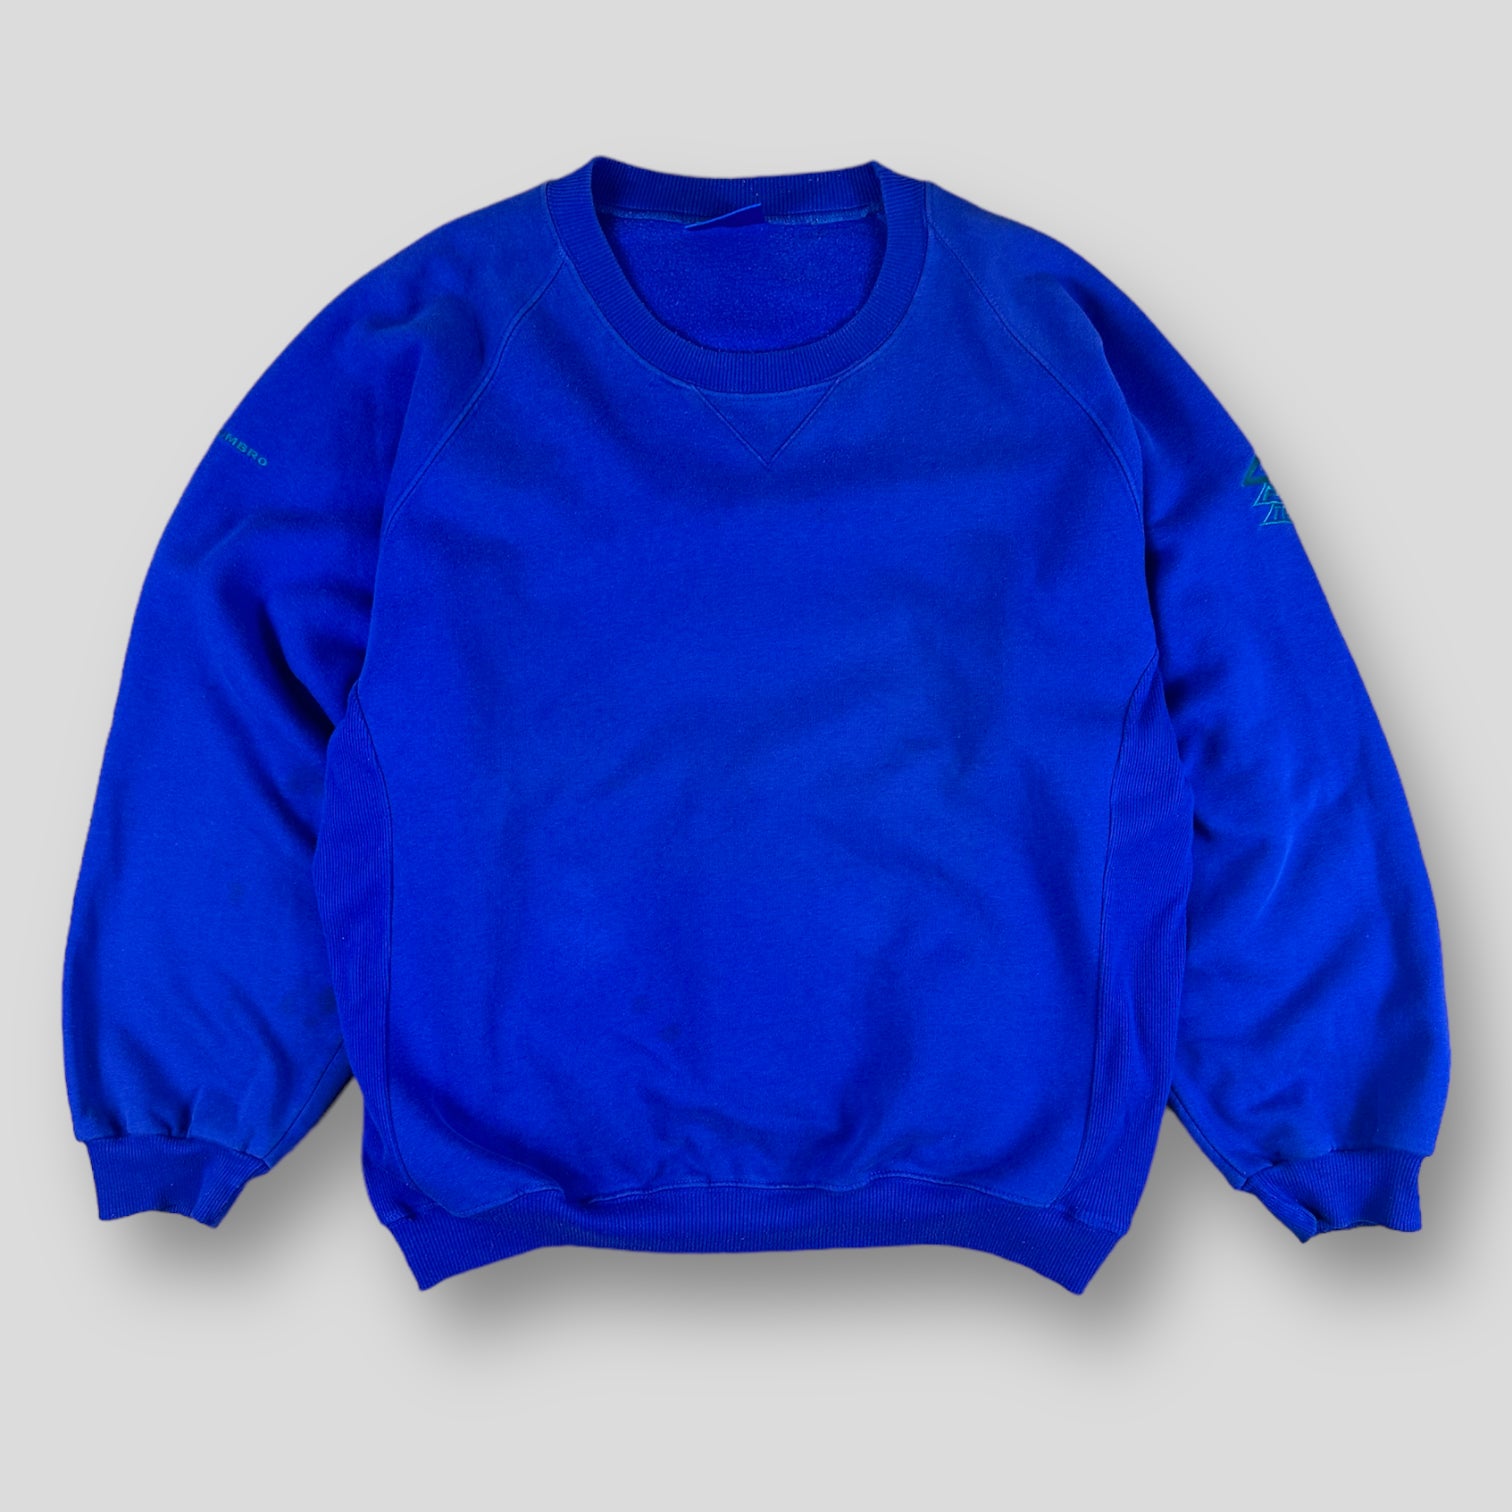 Umbro sweater